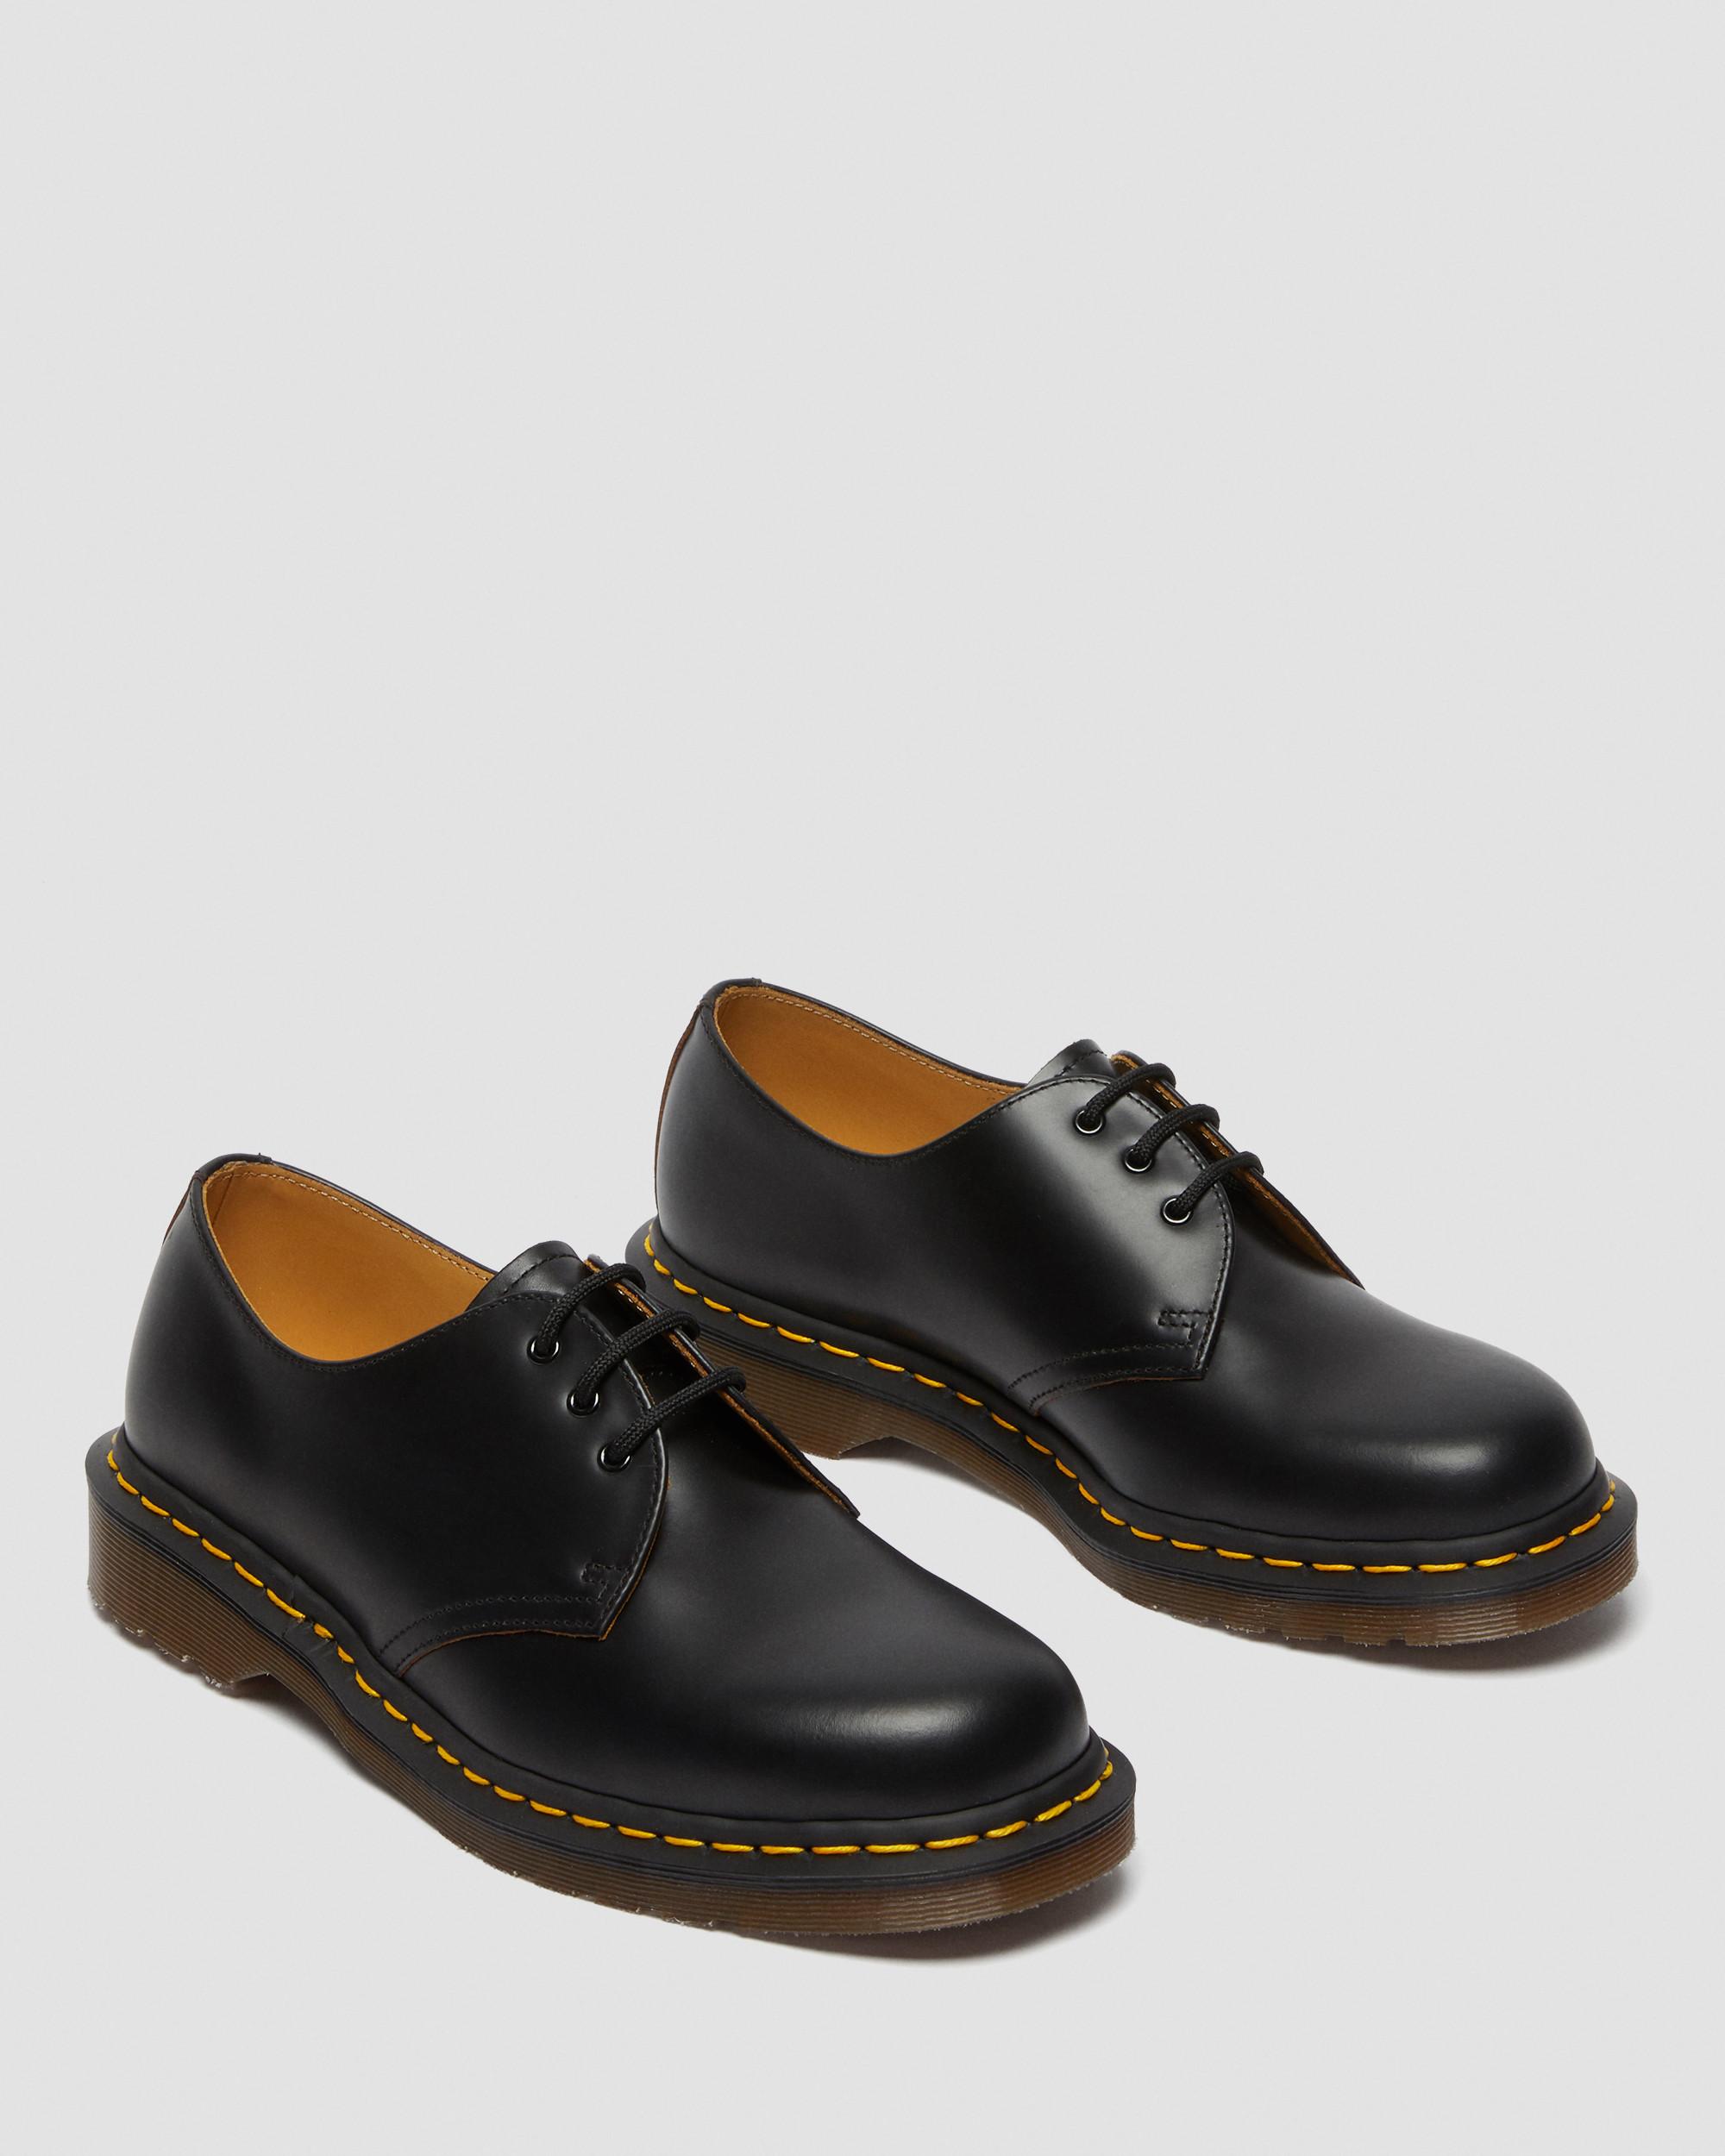 Vintage 1461 Quilon Leather Oxford ShoesVintage 1461 Quilon Leather Oxford Shoes Dr. Martens